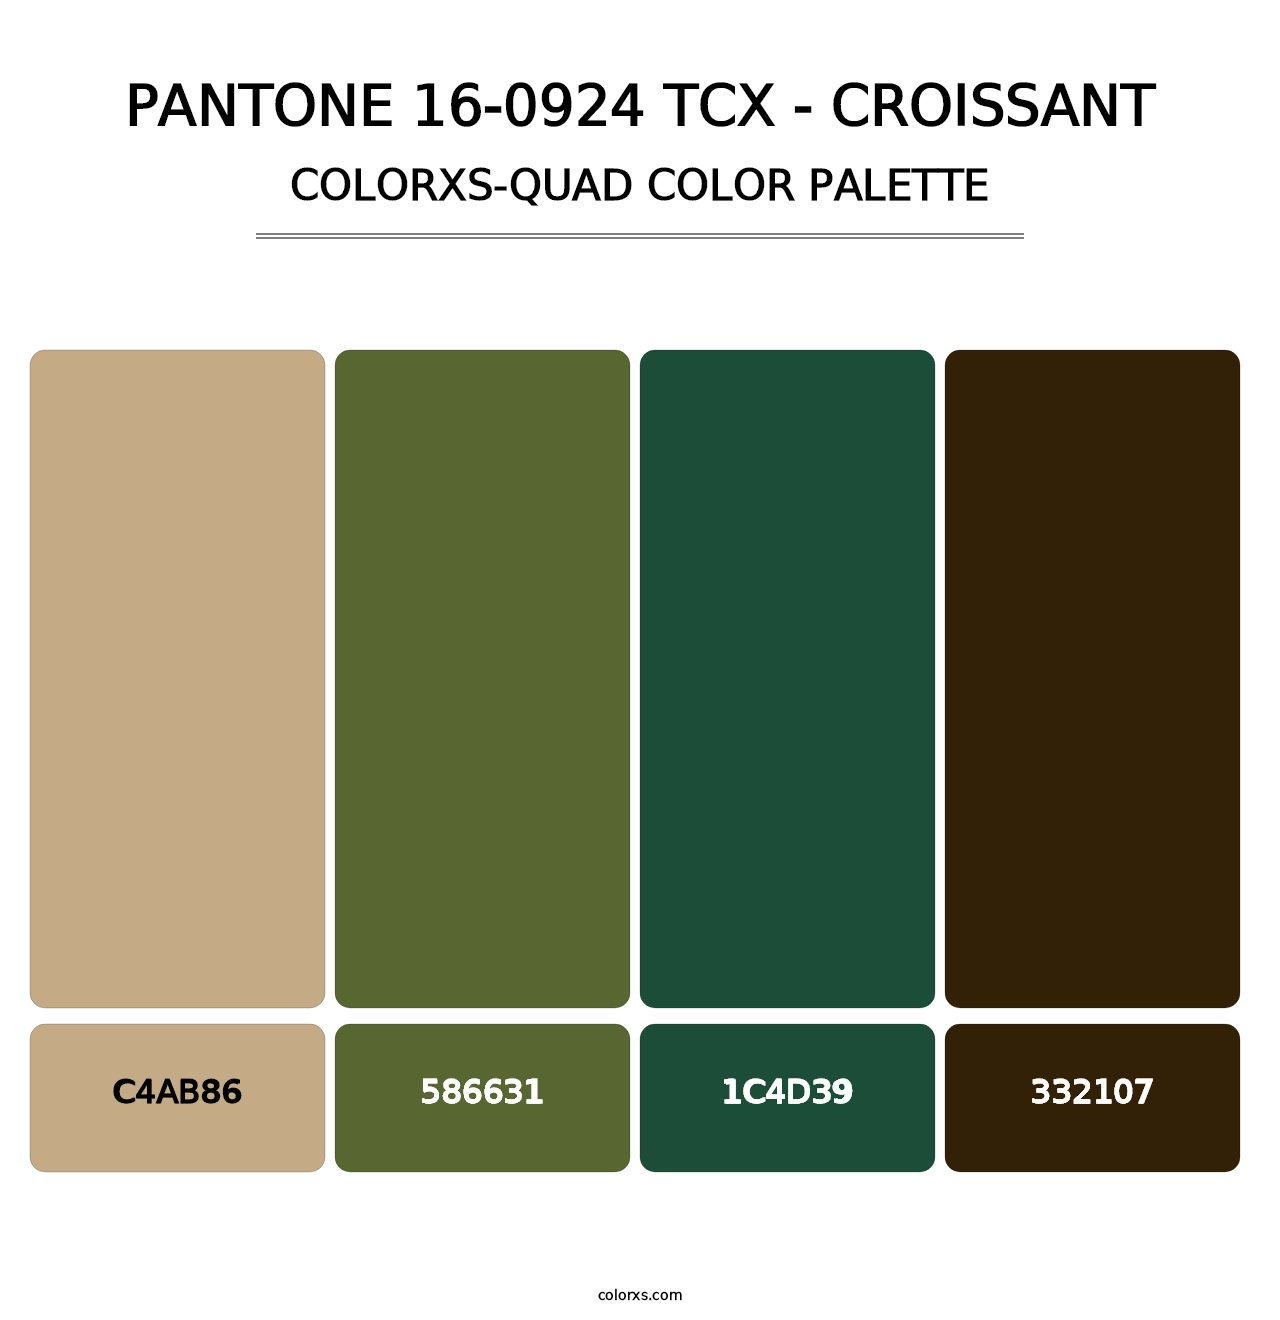 PANTONE 16-0924 TCX - Croissant - Colorxs Quad Palette